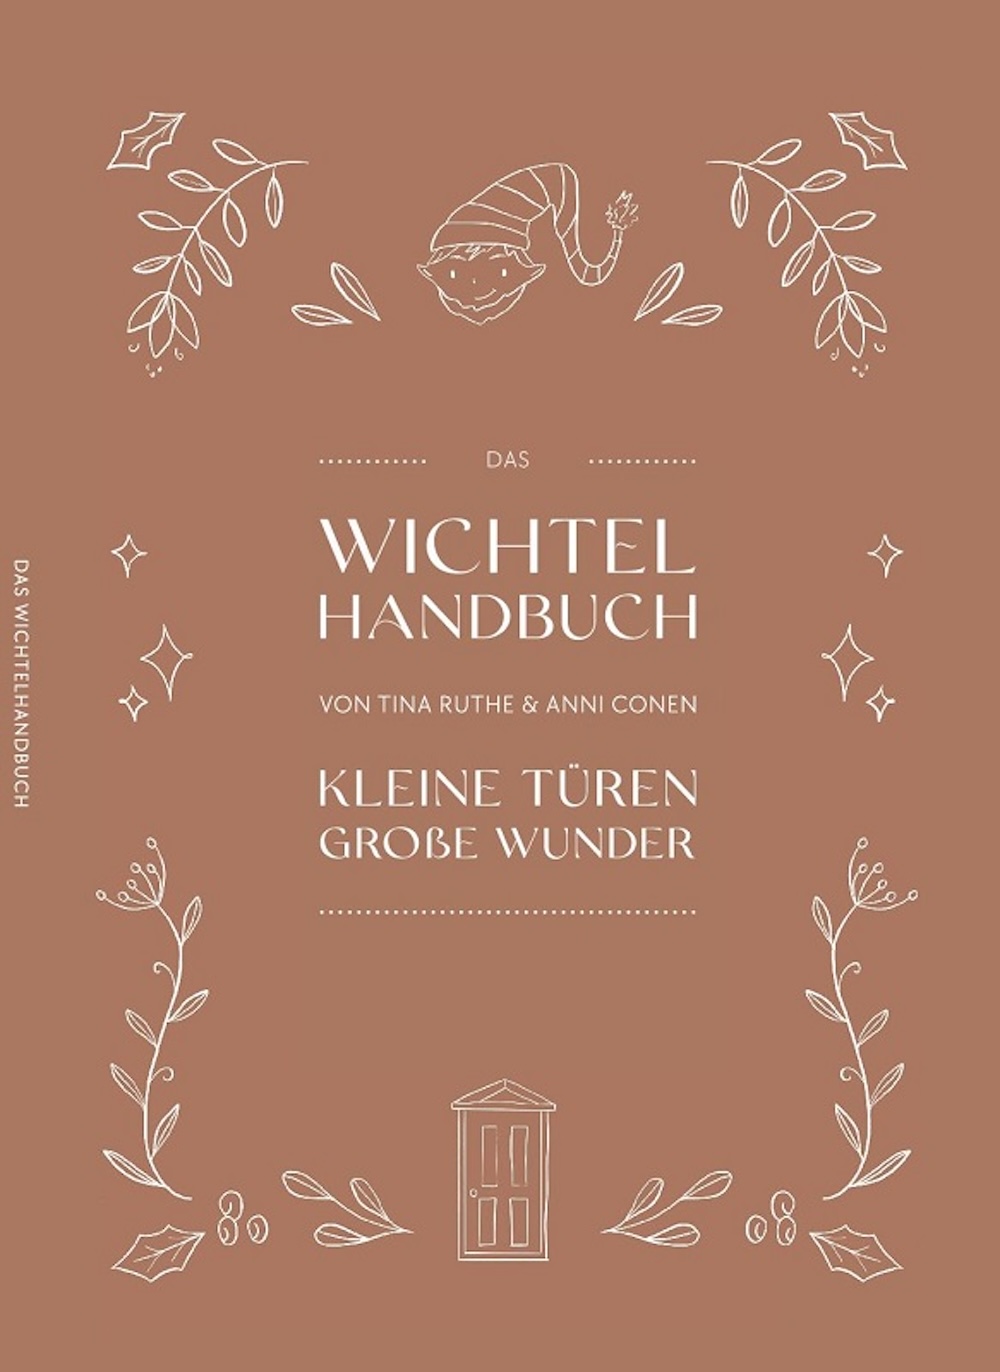 Das Wichtel Handbuch  "Kleine Türen - Große Wunder" 